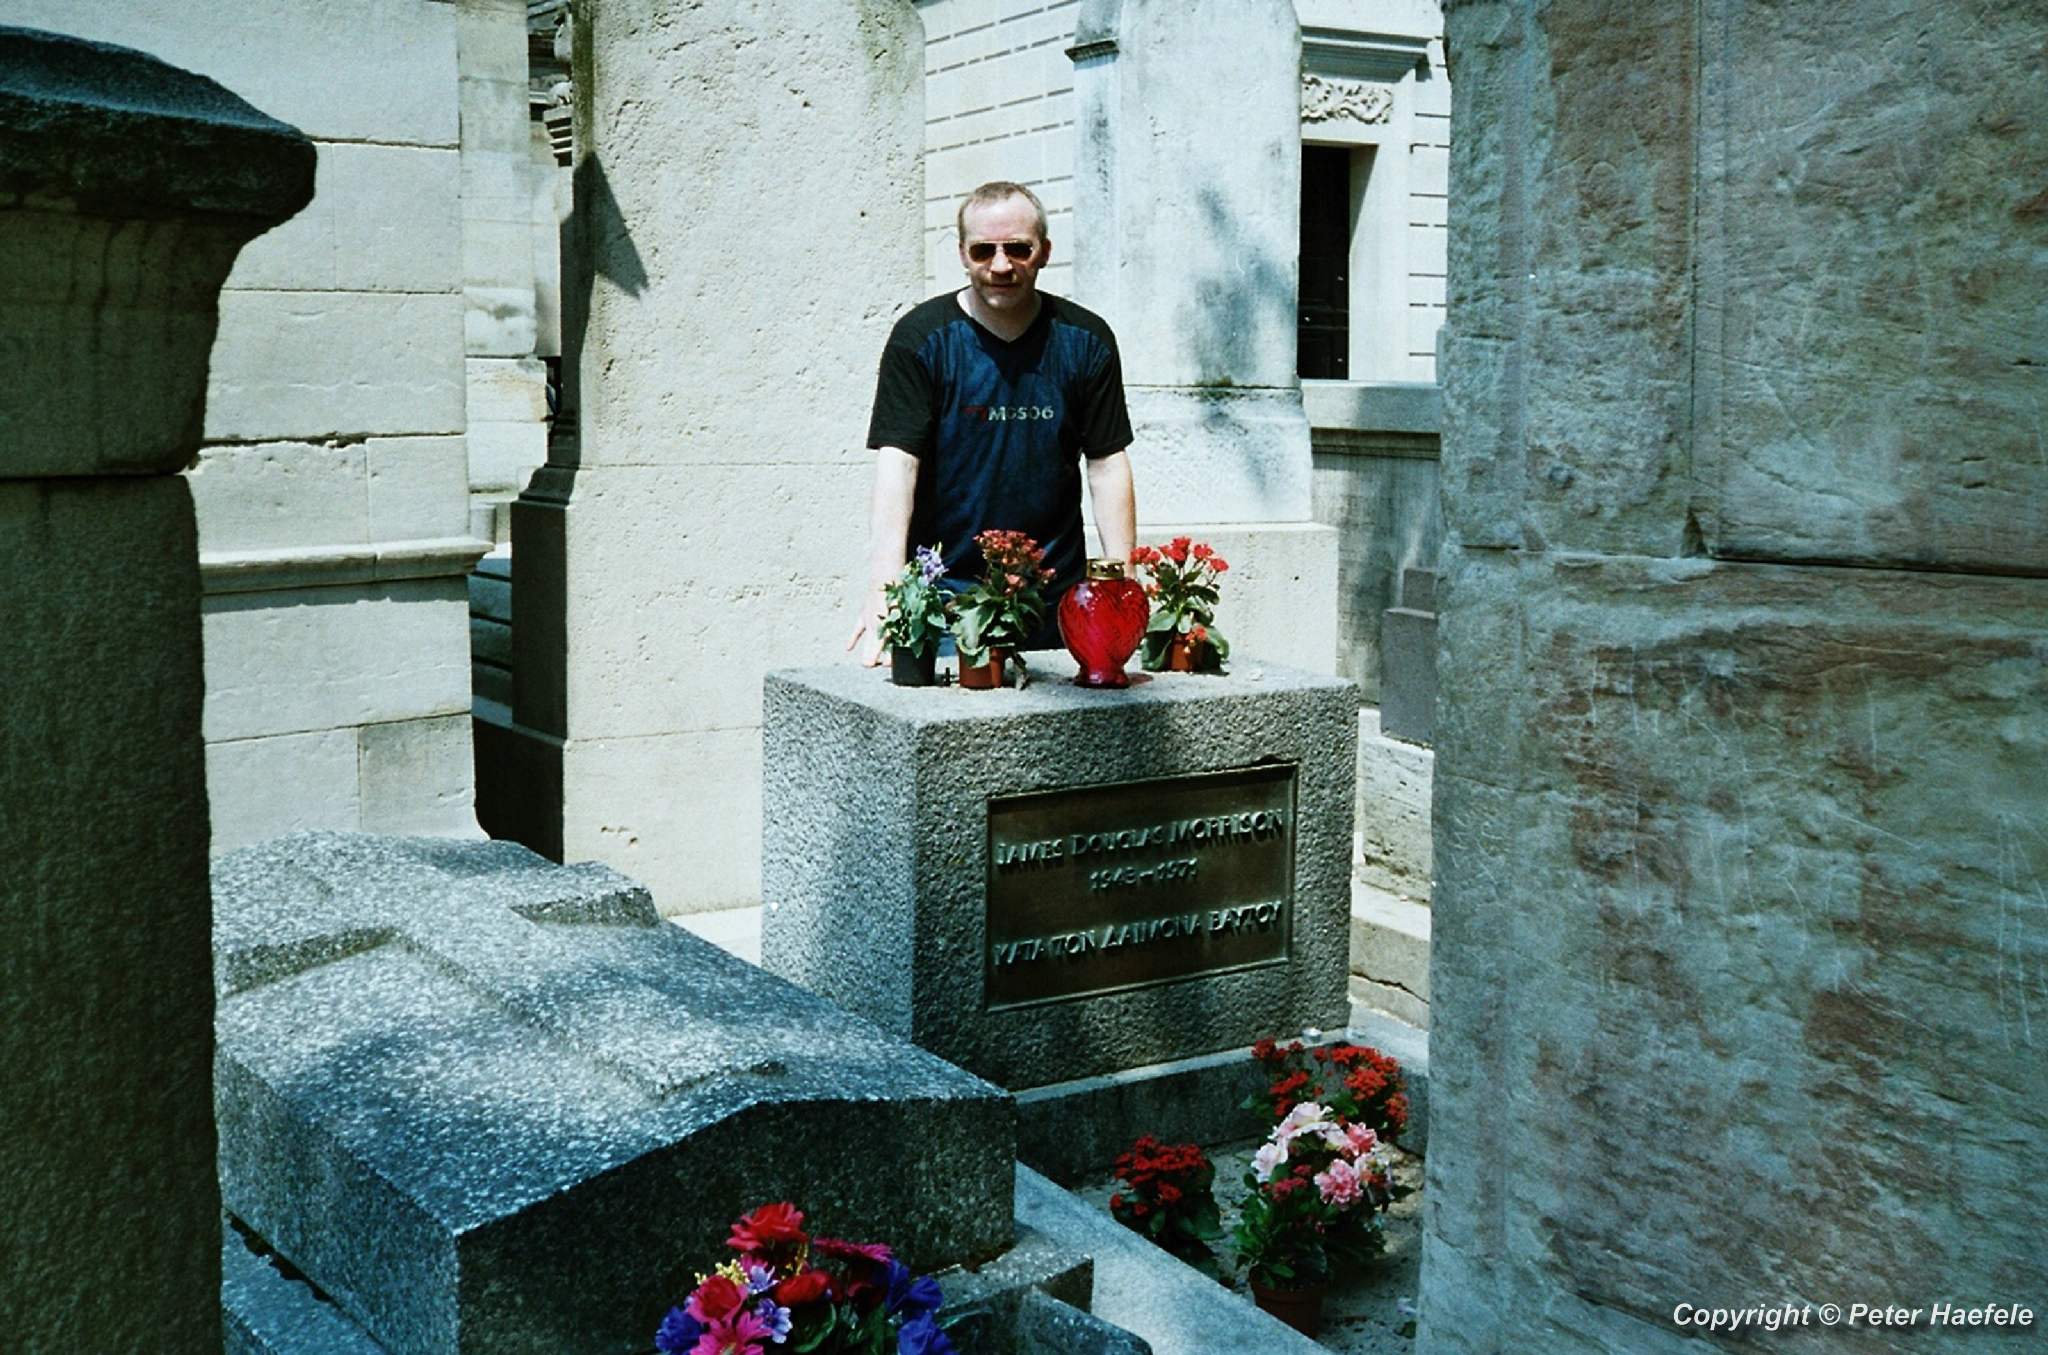 Das Grab von Jim Morrison - Père Lachaise, Paris, Frankreich - © Peter Haefele Fotografie